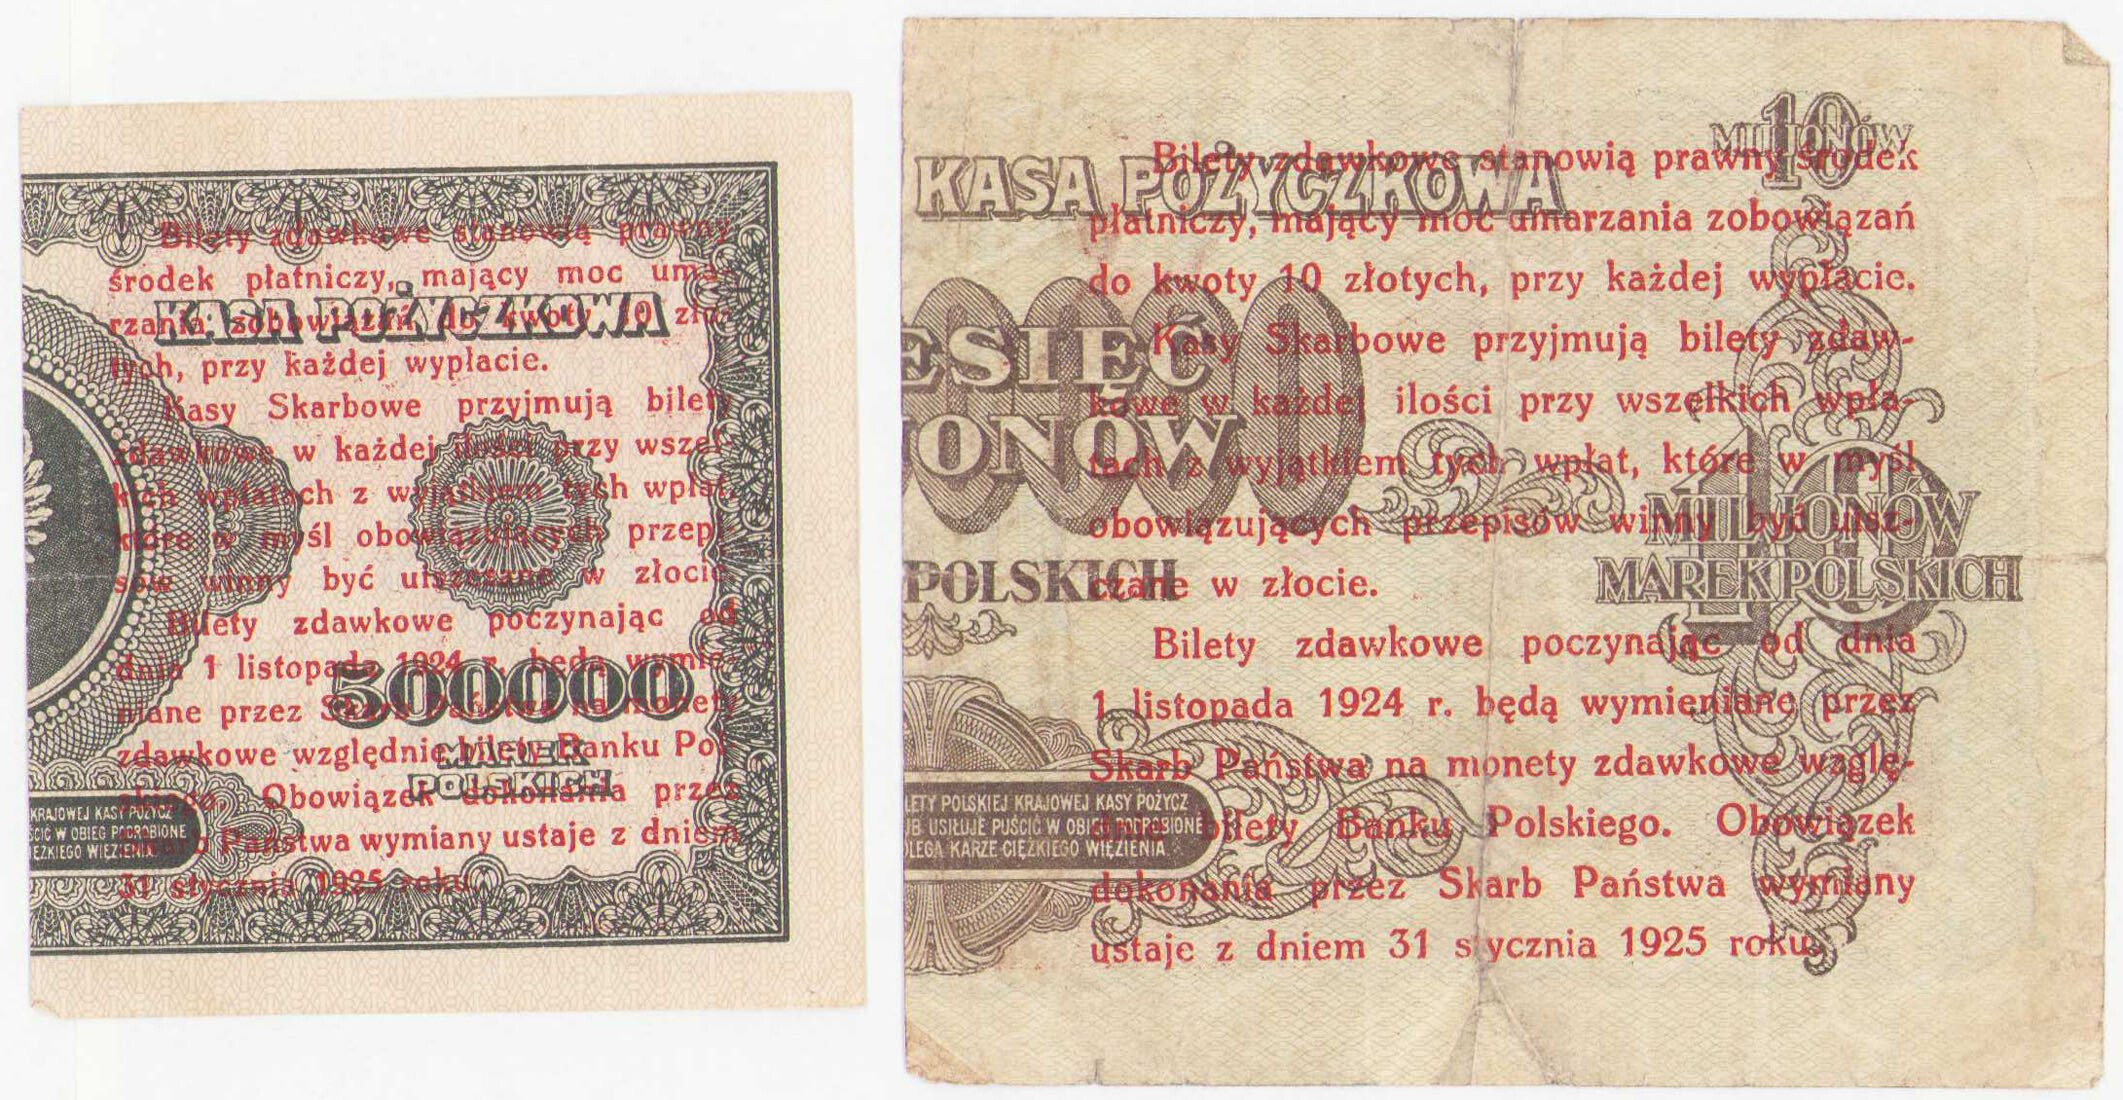 1 grosz 1924 + 5 groszy 1924, zestaw 2 banknotów